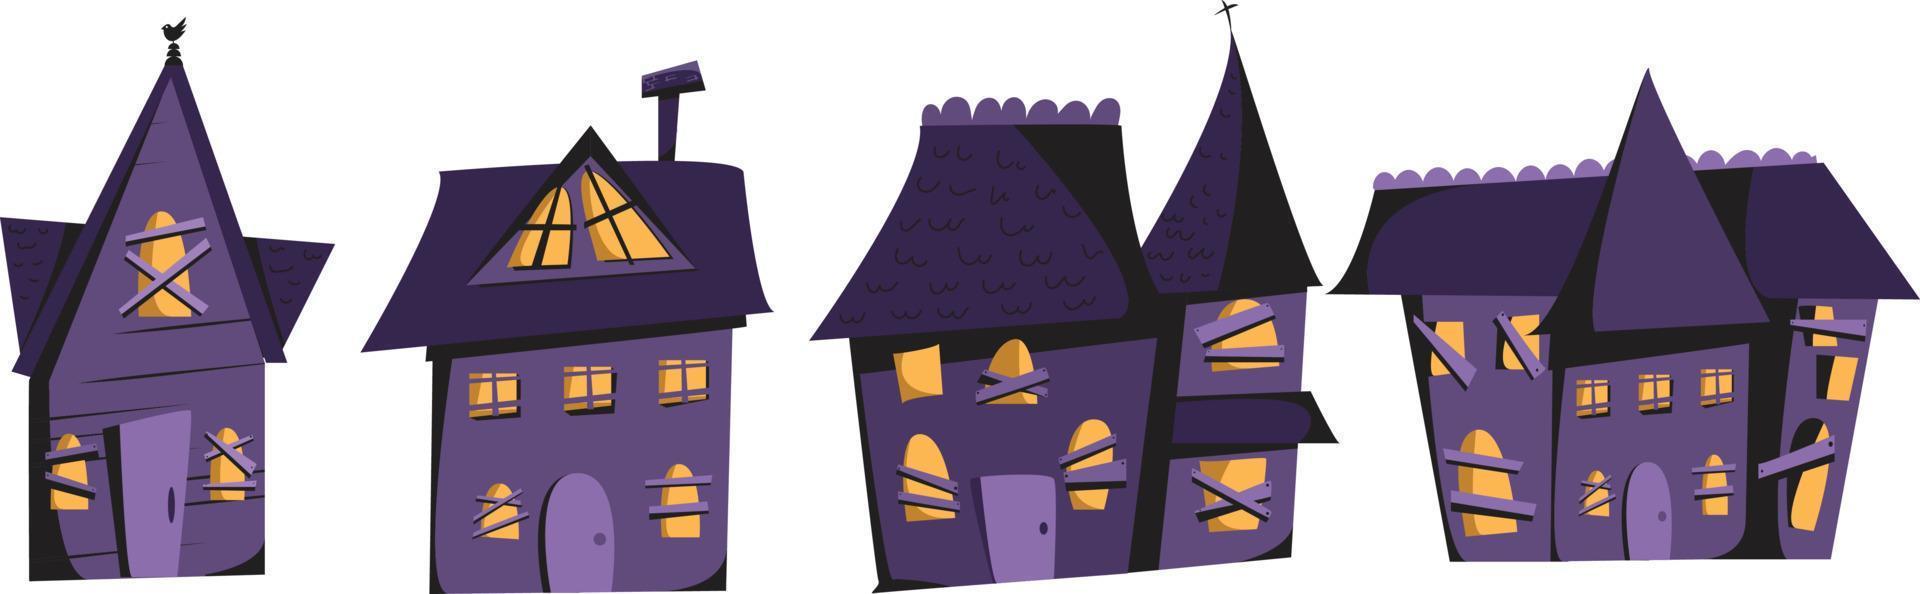 ilustración de casas embrujadas de halloween de dibujos animados planos vectoriales dibujados a mano. vector